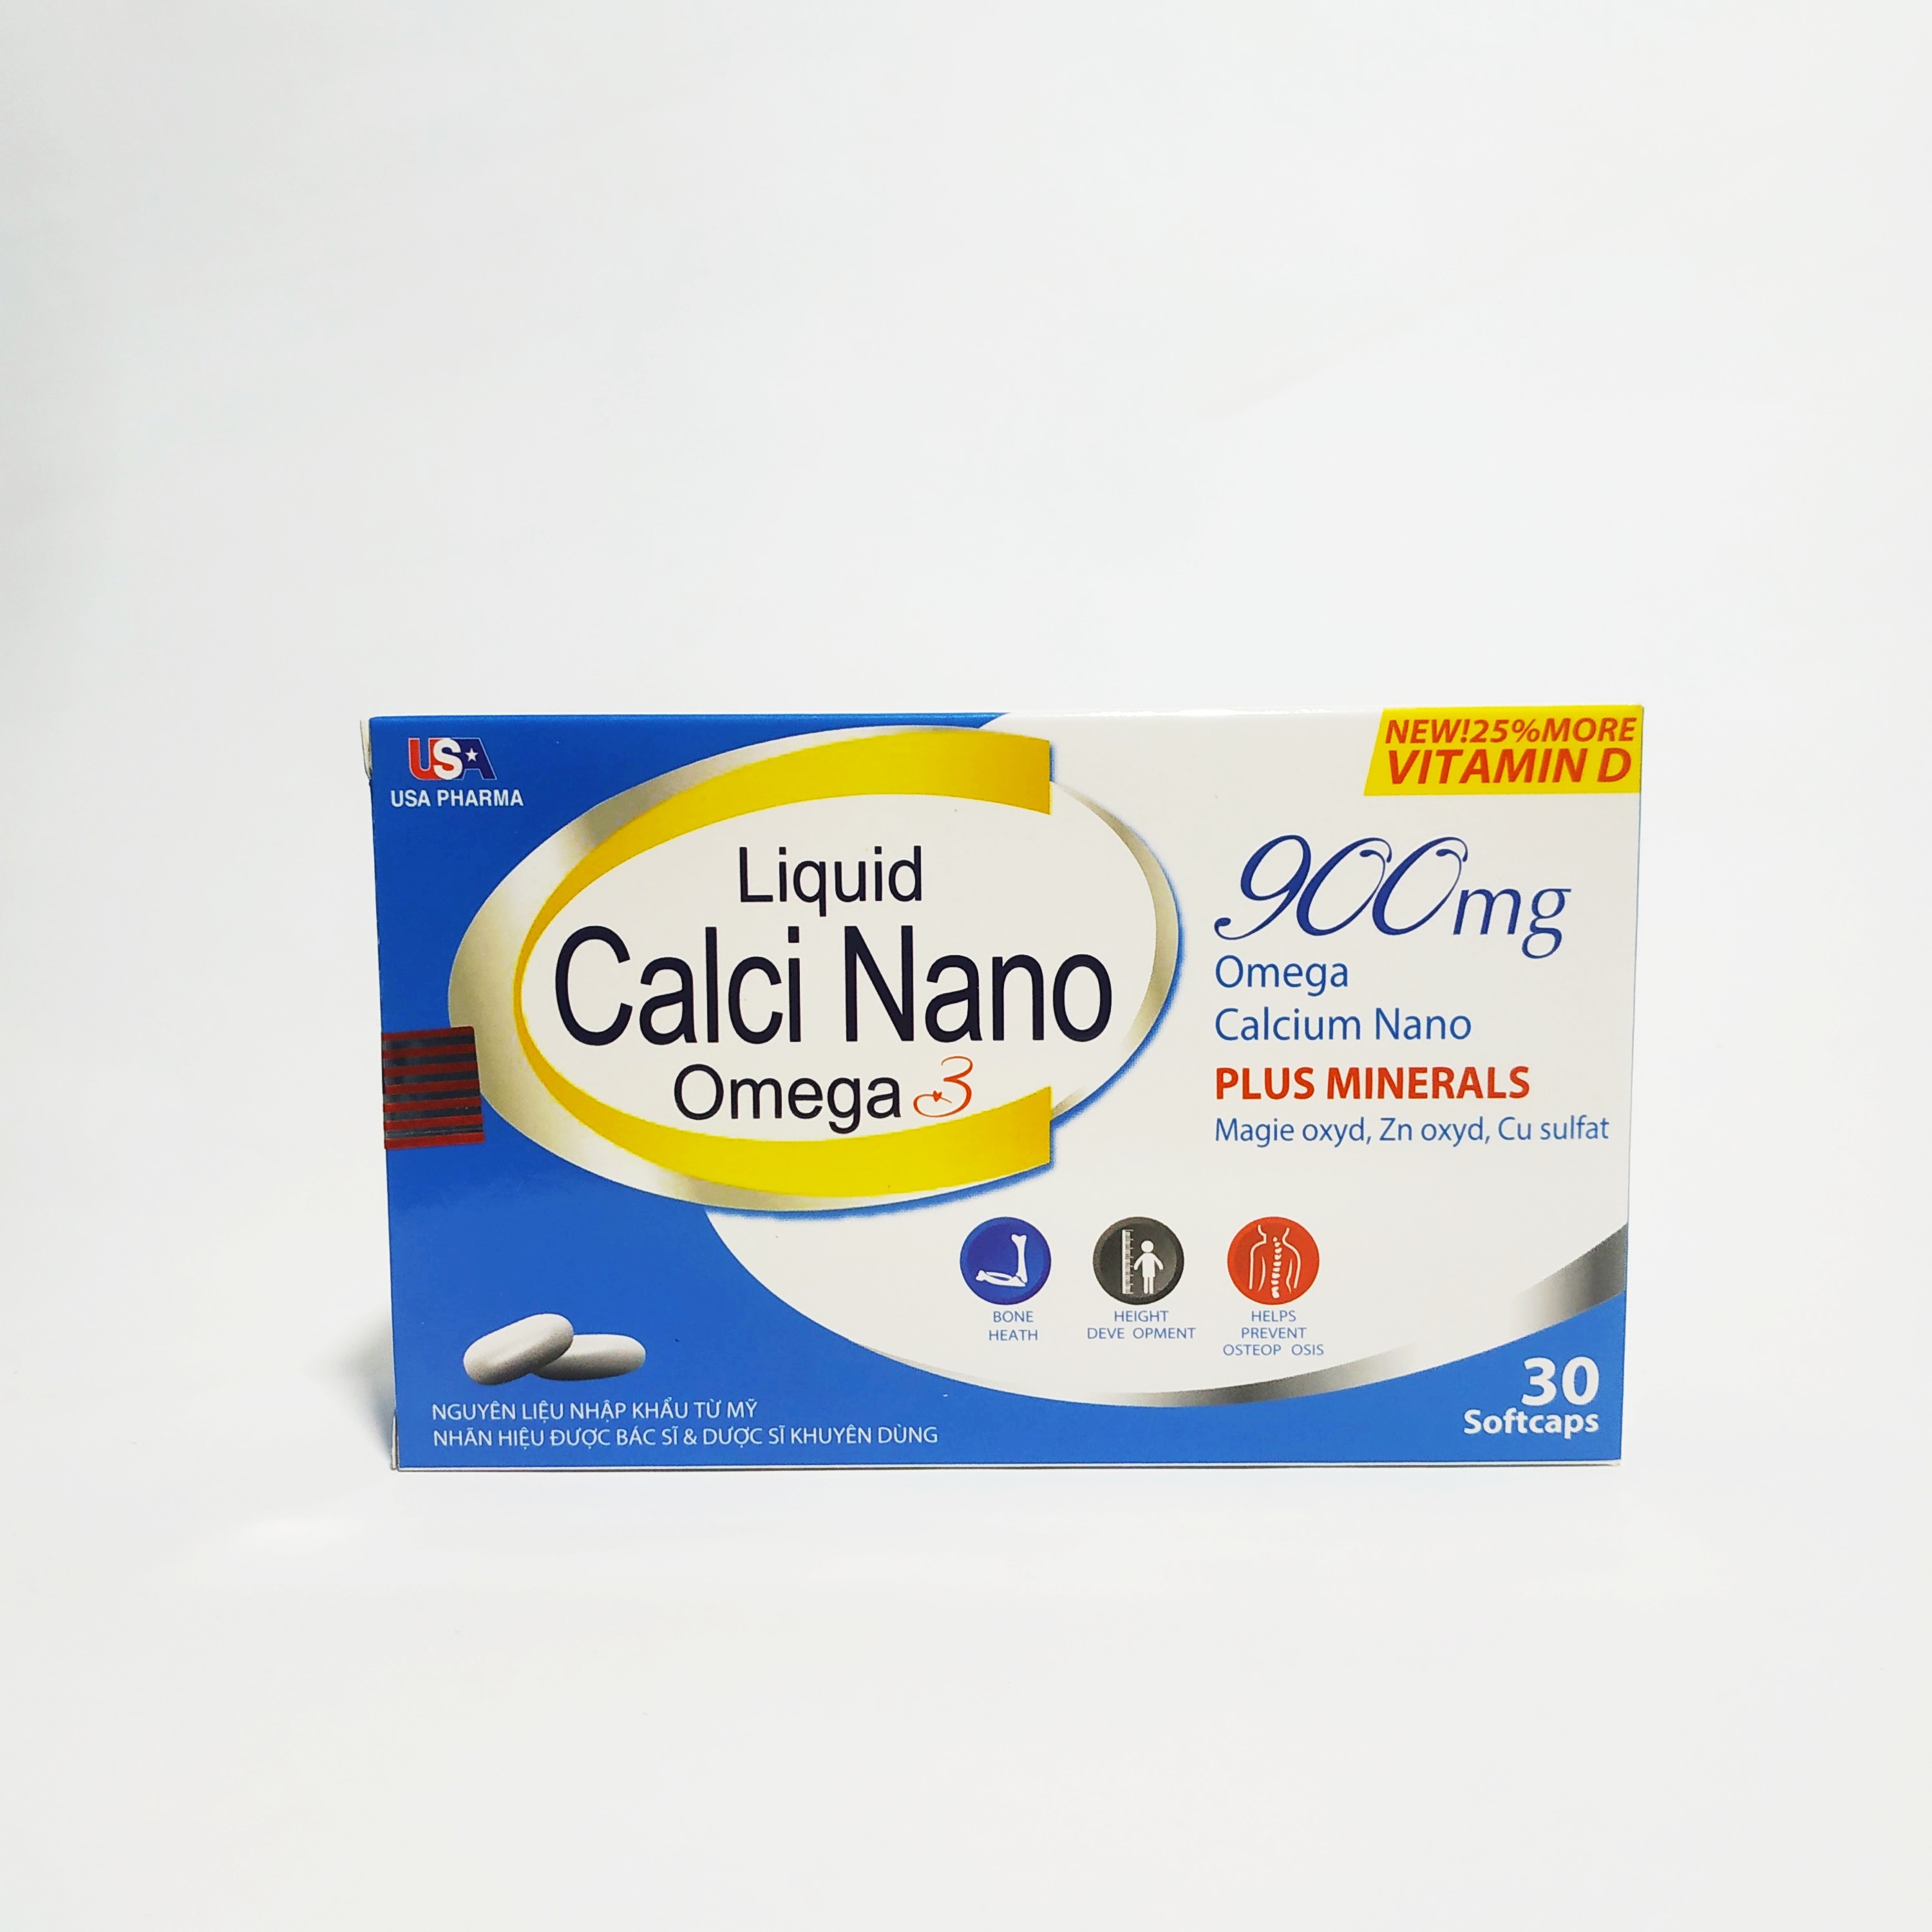 Viên Uống Bổ Sung Canxi Nano Omega 3 - Dành Cho Người Cần Bổ Sung Canxi - Liquid Calci Nano Omega 3 - Hộp 30 Viên